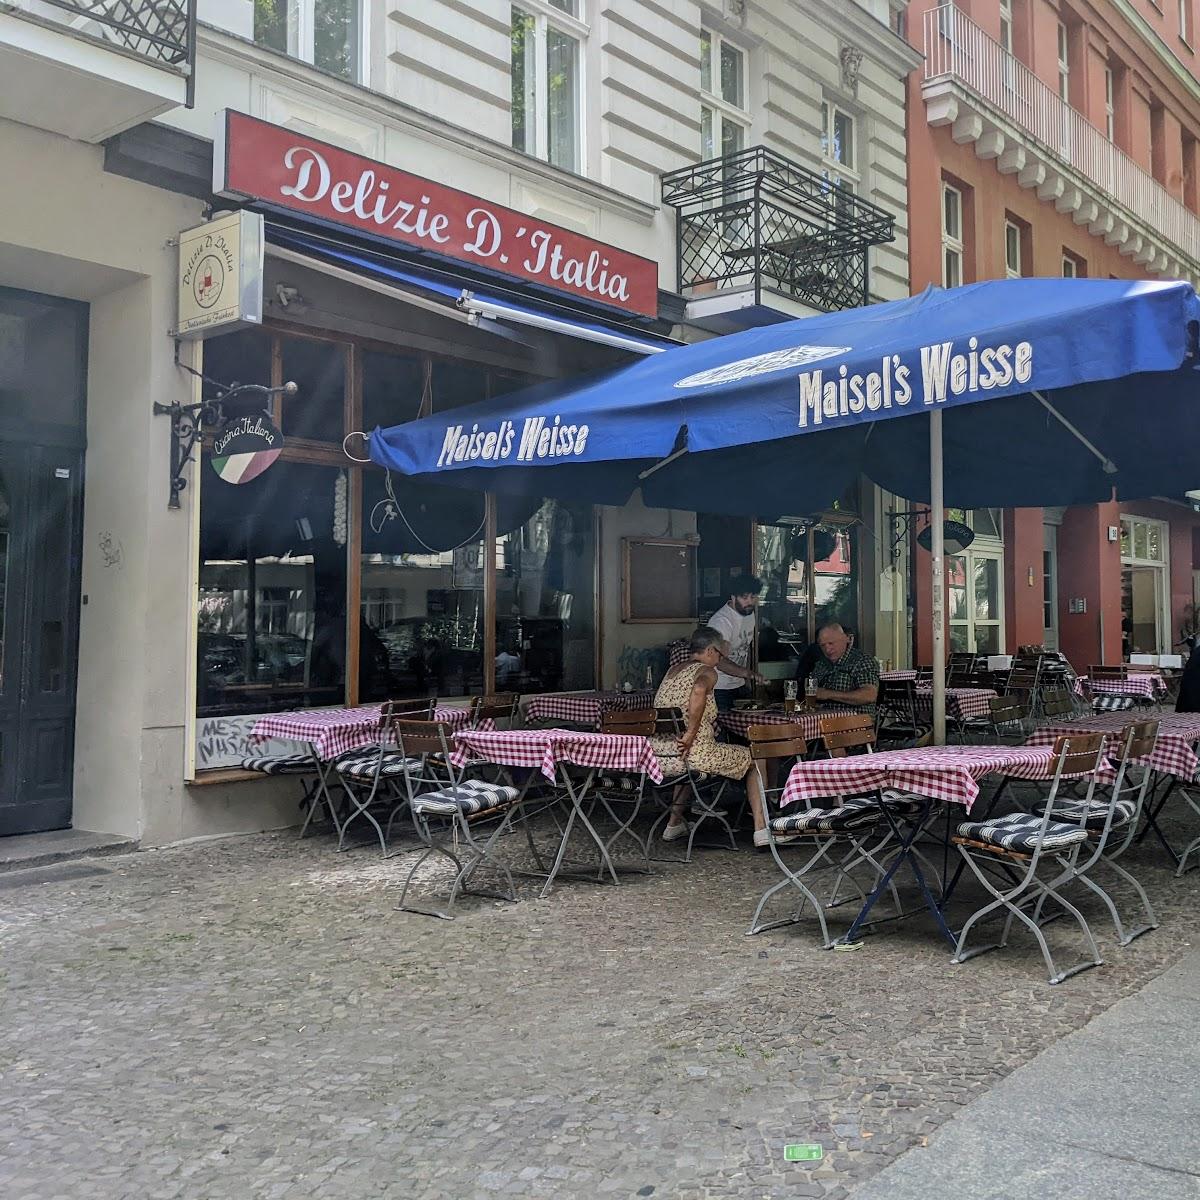 Restaurant "Delizie D’Italia" in Berlin